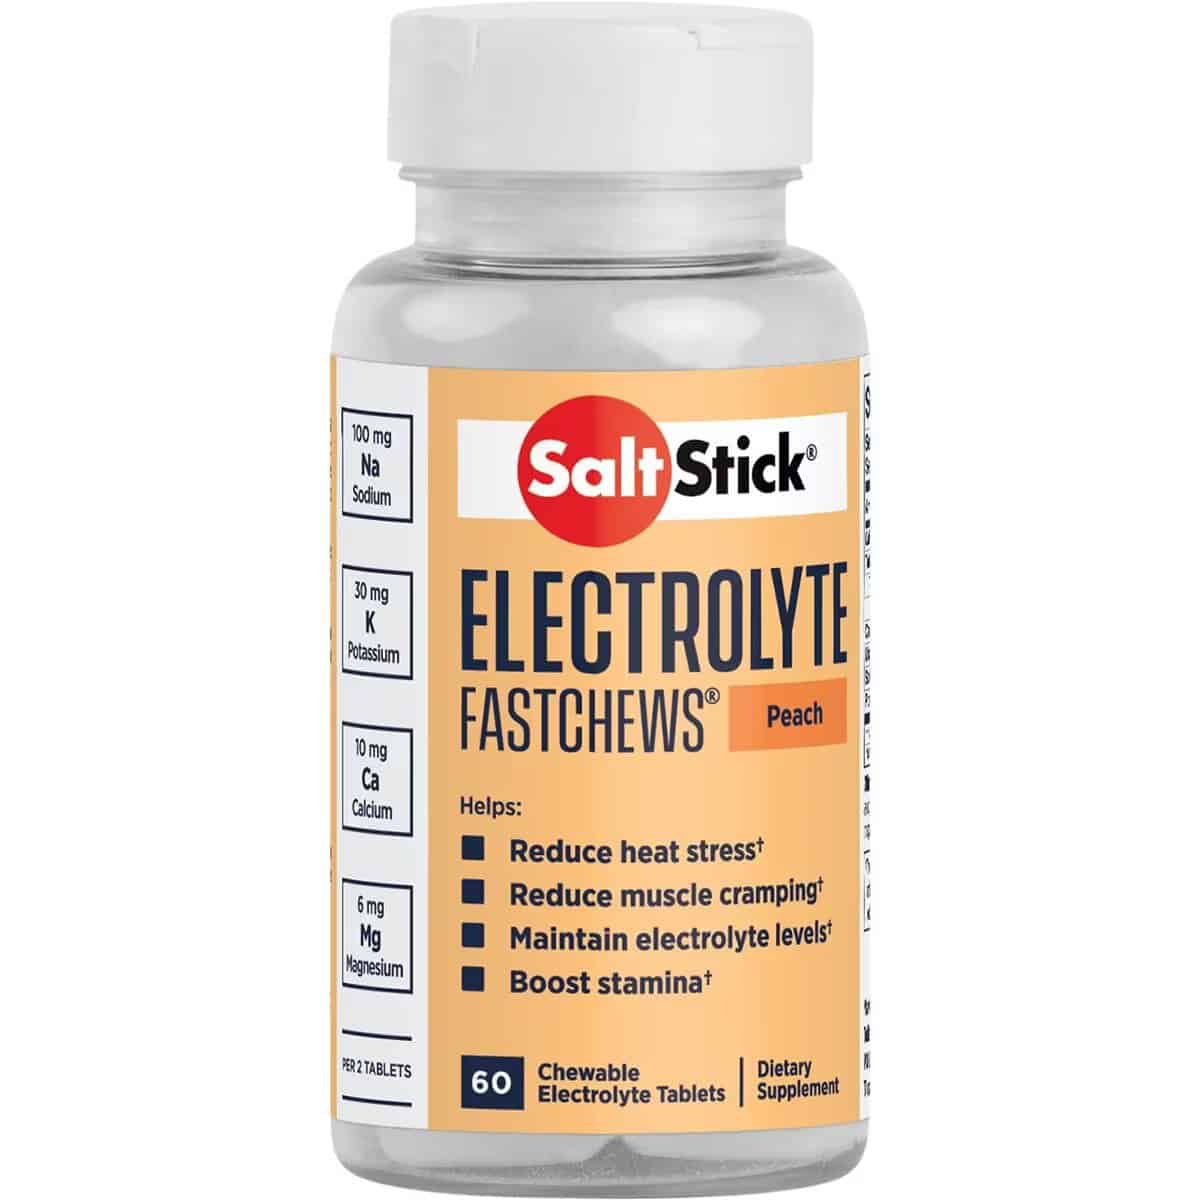 SaltStick electrolytes